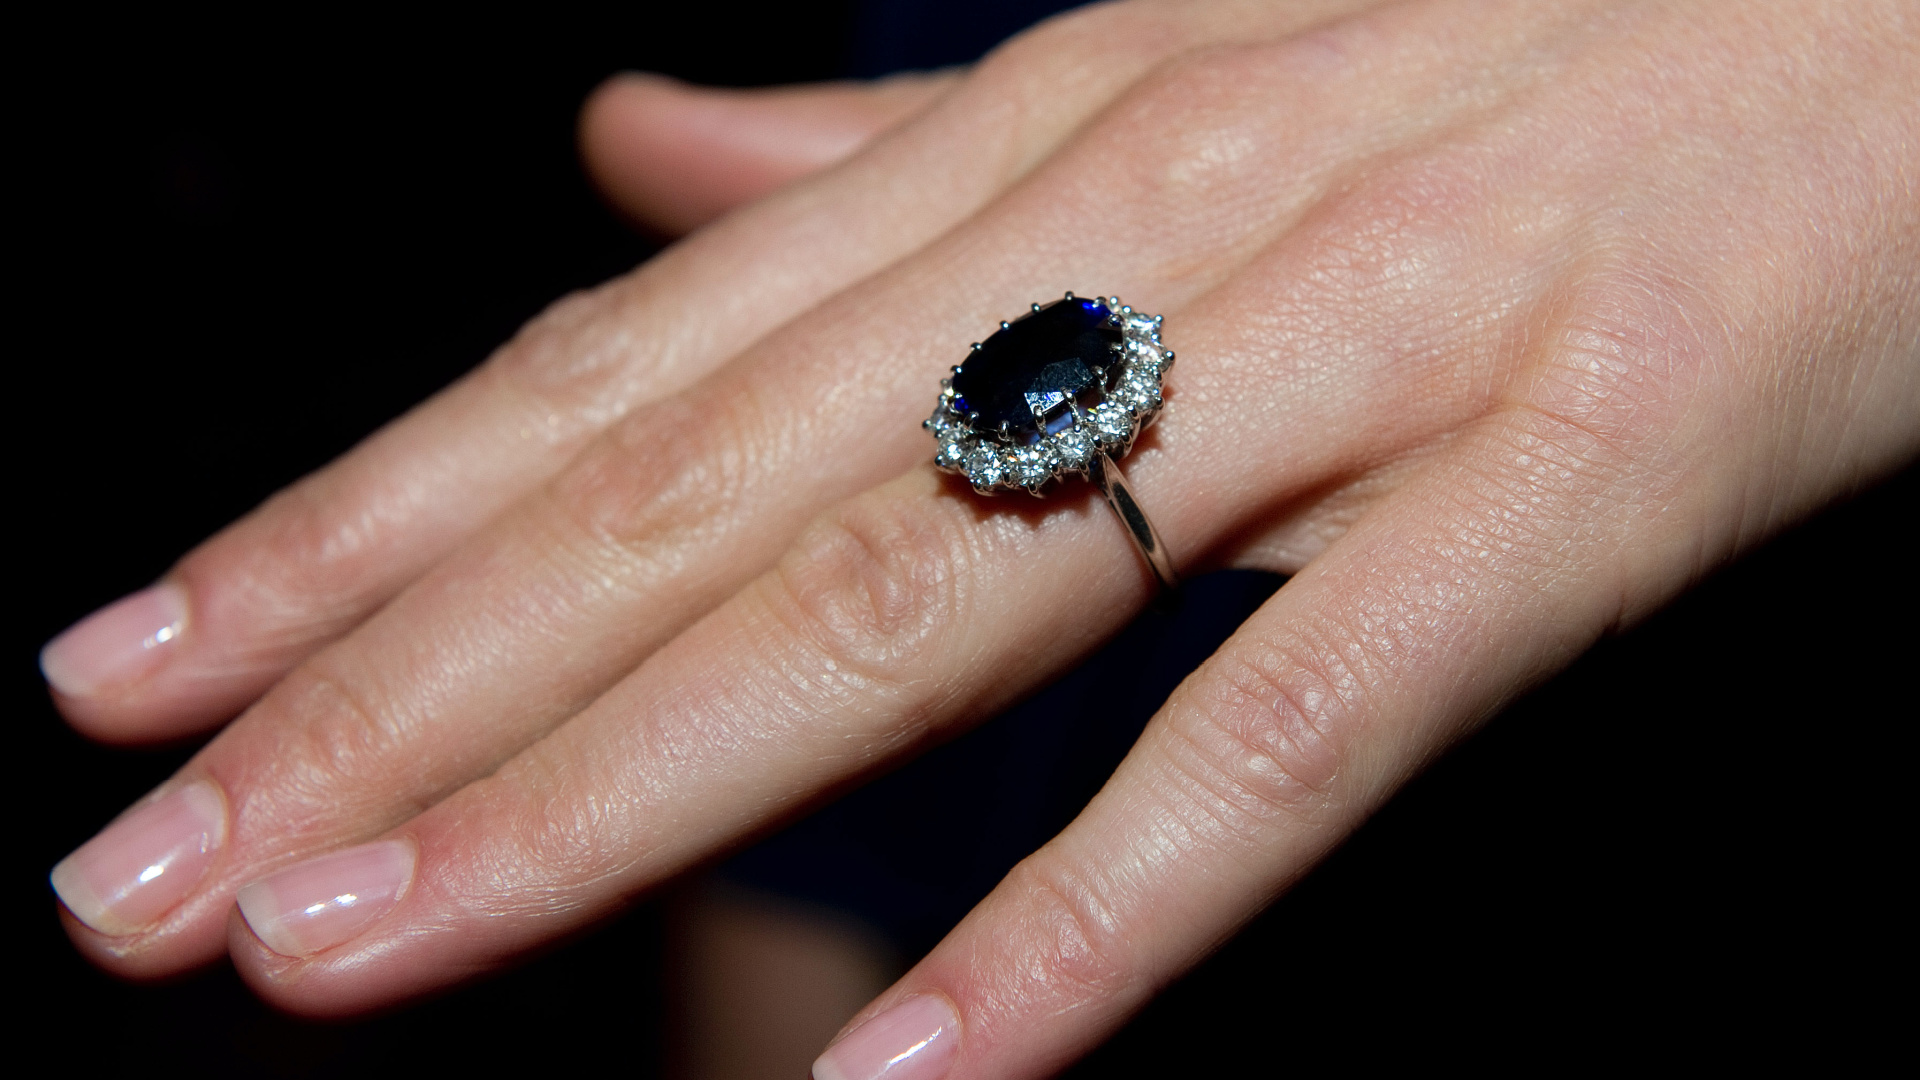 <p>El anillo de compromiso de Kate Middleton tiene un gran zafiro azul ovalado de 12 quilates que está rodeado por una corona con catorce diamantes. El engaste está realizado en oro blanco de 18 quilates. Los joyeros incluyeron pequeñas cuentas de platino en el cuerpo del anillo para hacerlo más pequeño y que se pudiera ajustar a los delgados dedos de la duquesa.</p>